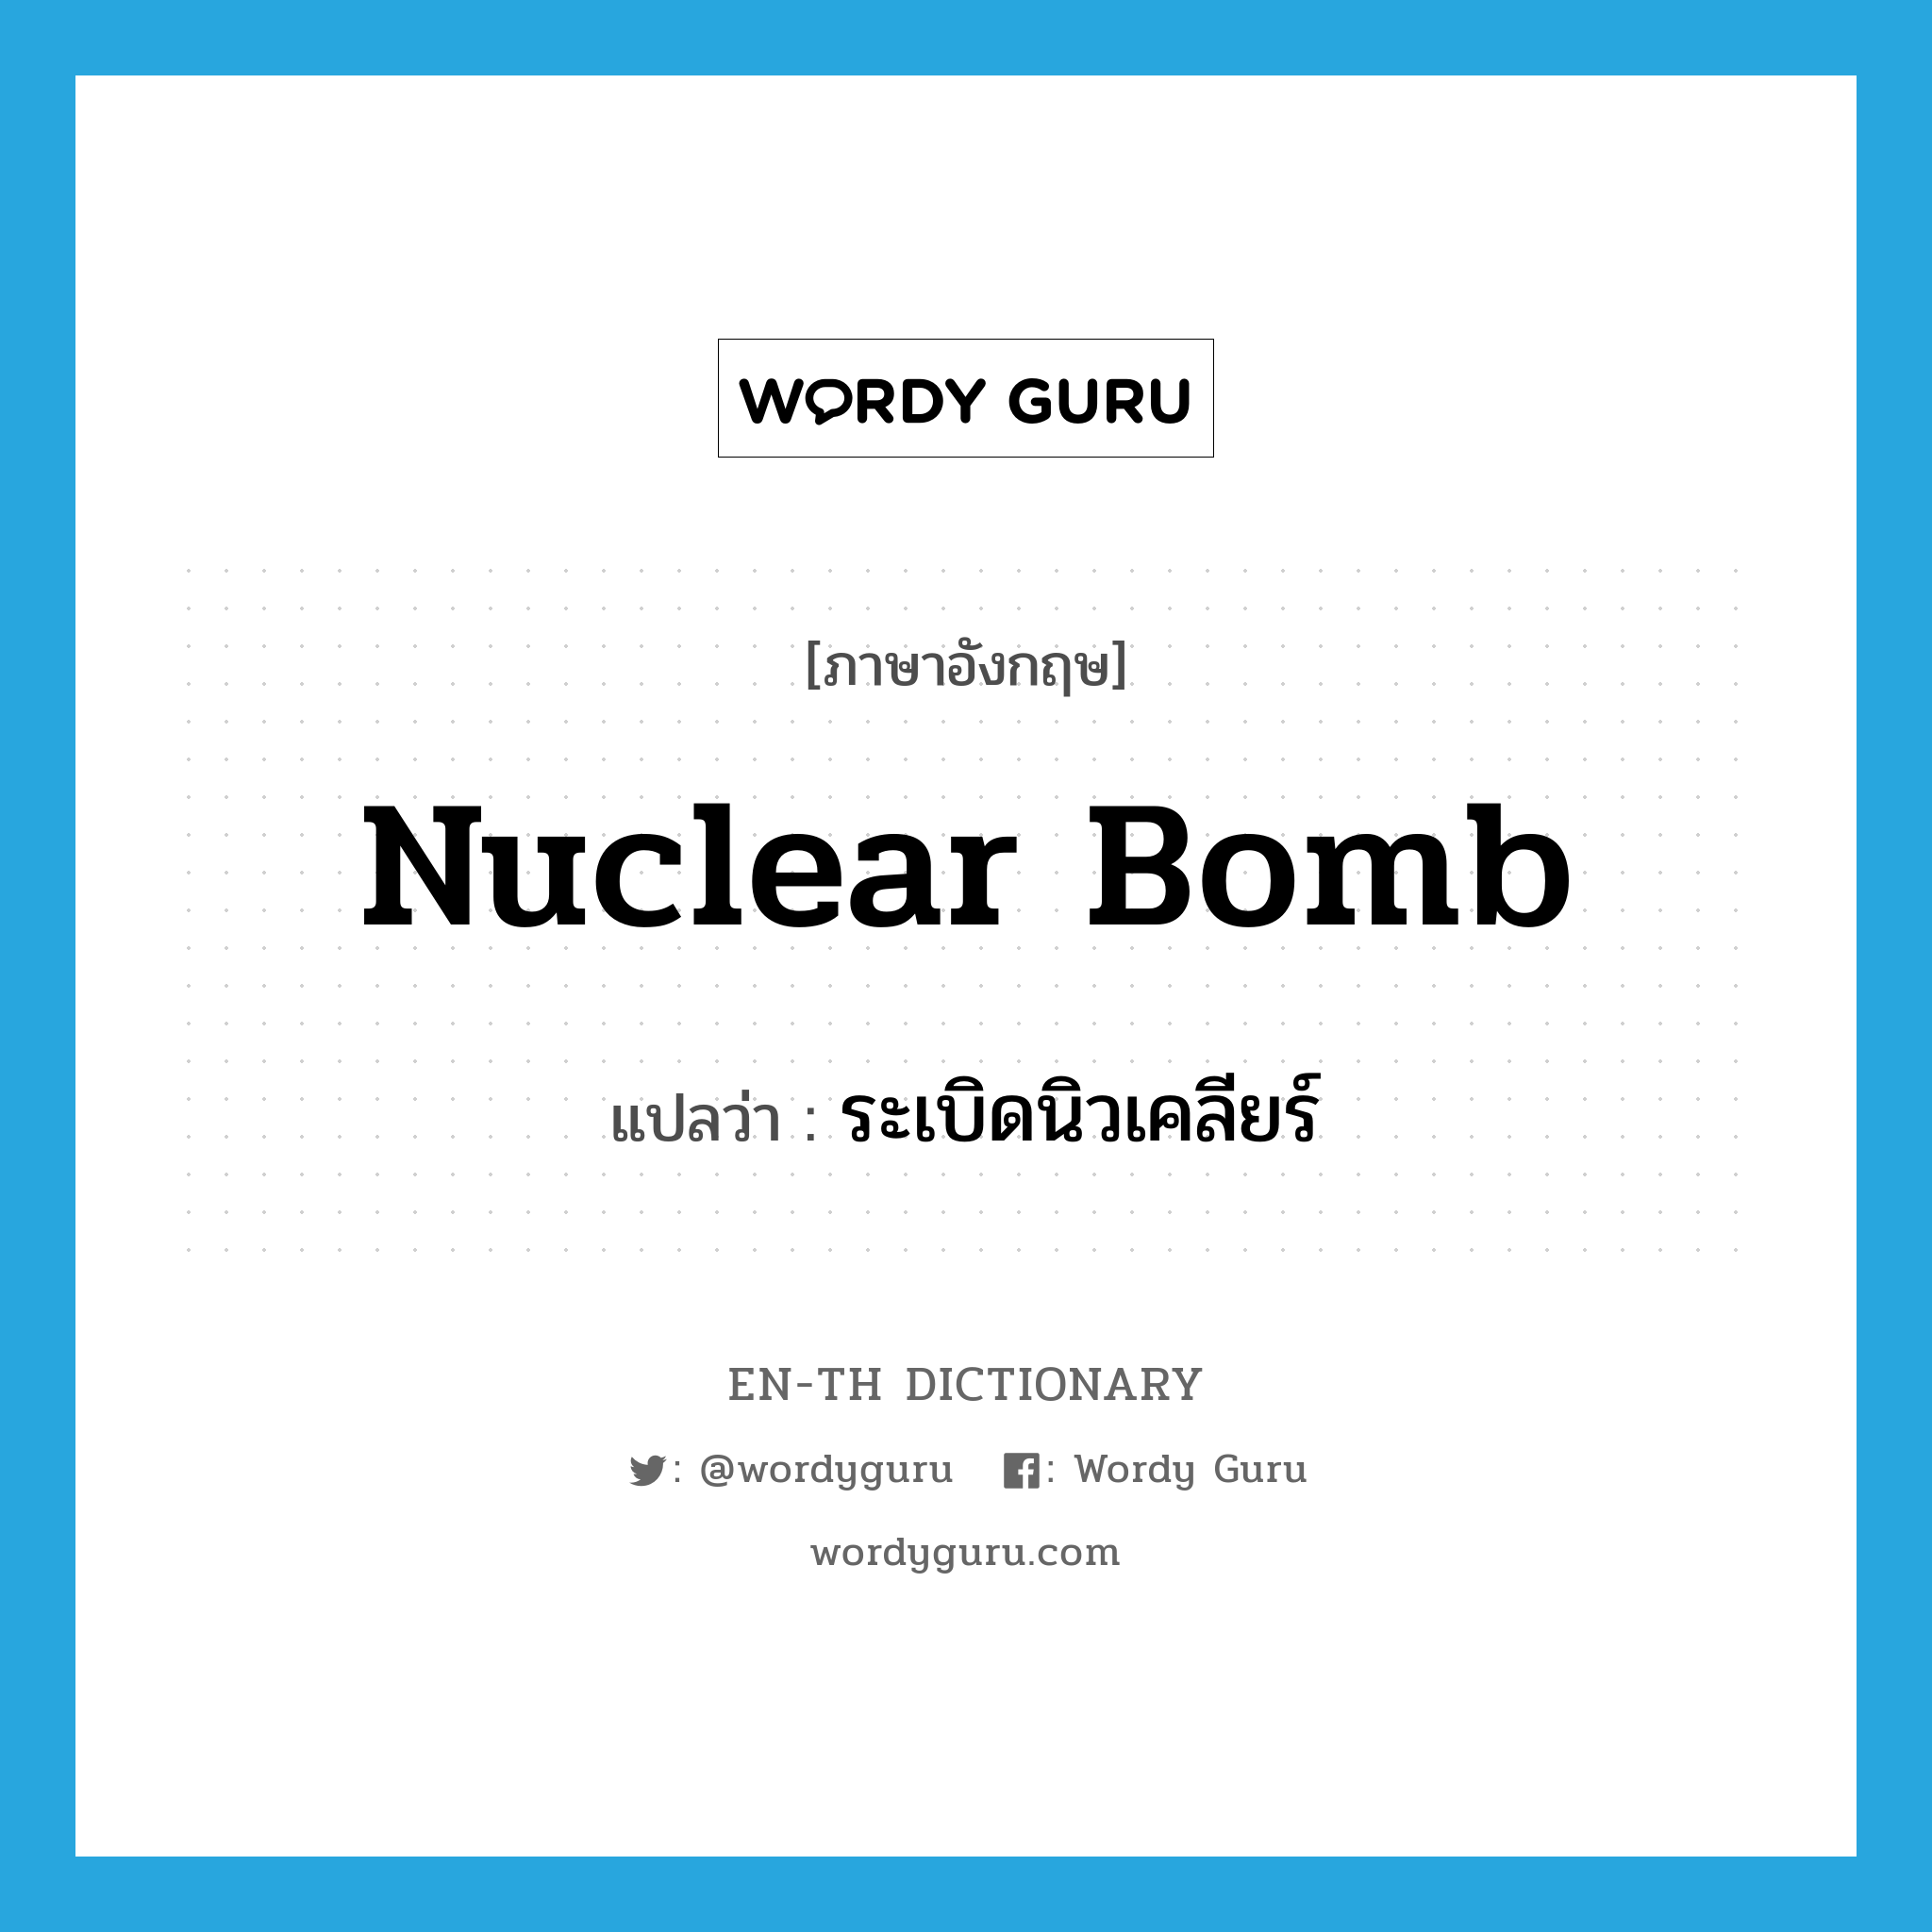 nuclear bomb แปลว่า?, คำศัพท์ภาษาอังกฤษ nuclear bomb แปลว่า ระเบิดนิวเคลียร์ ประเภท N หมวด N